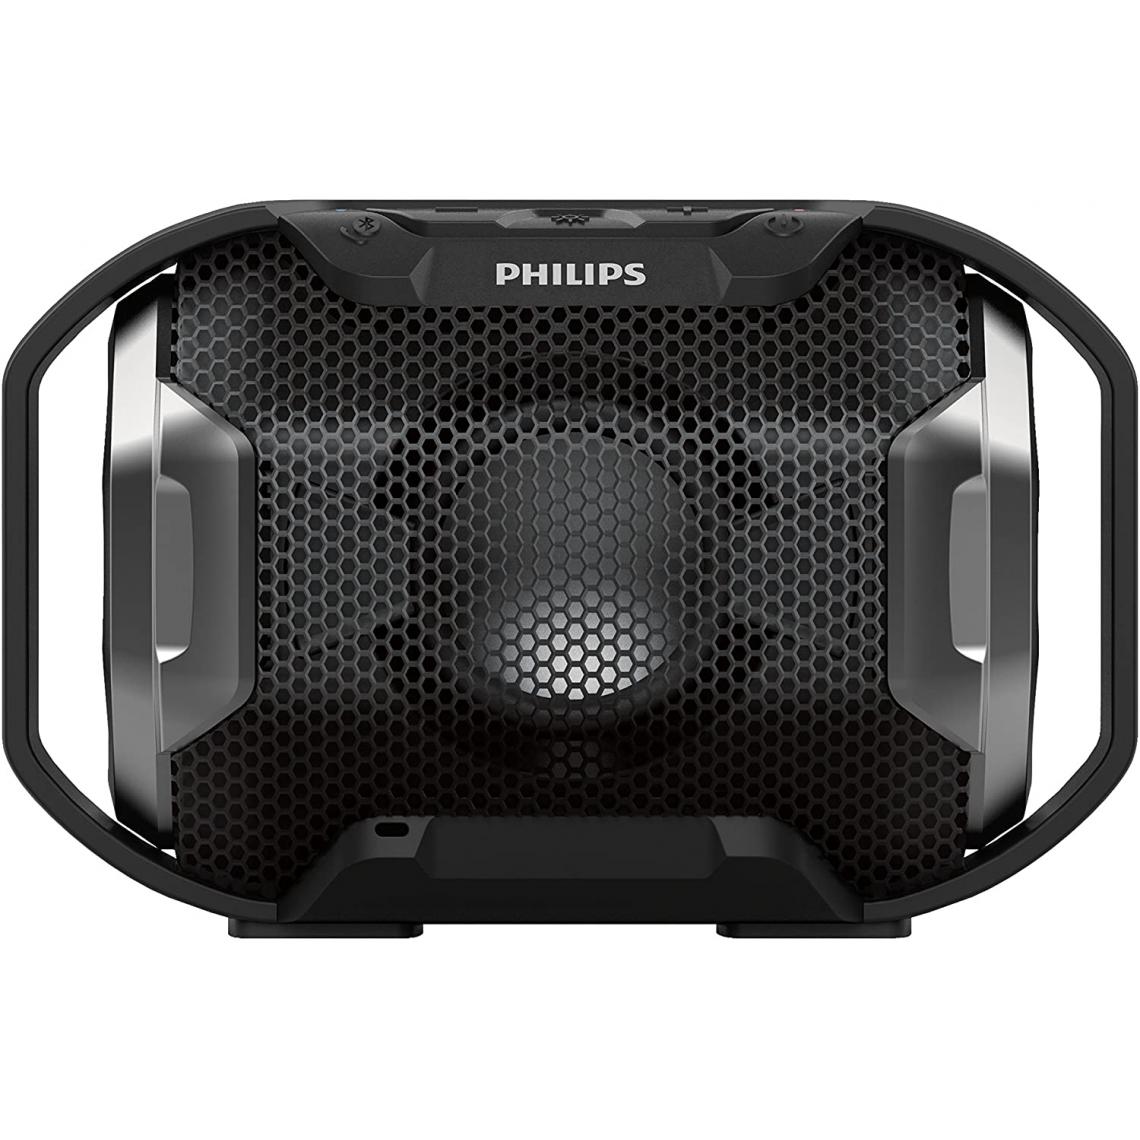 Philips - enceinte bluetooth portable avec lumière multicolore 4W noir - Enceintes Hifi